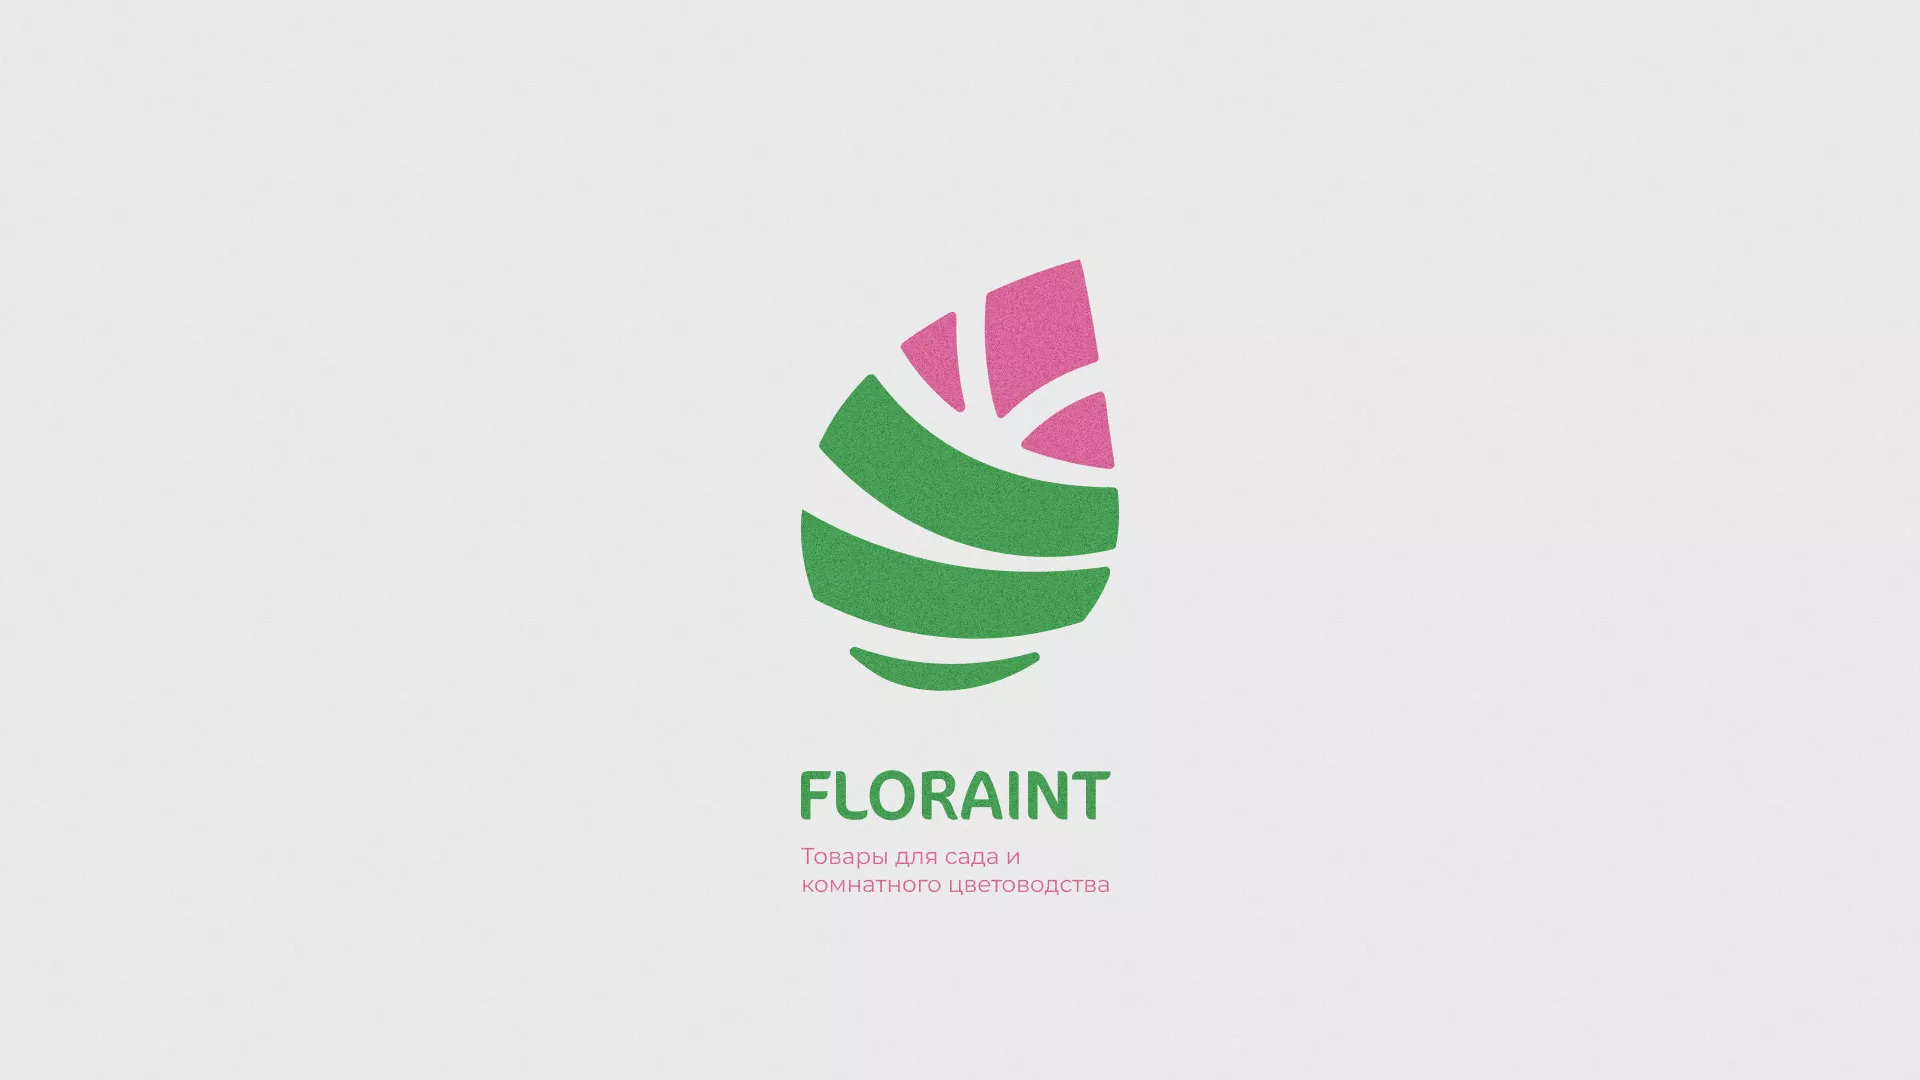 Разработка оформления профиля Instagram для магазина «Floraint» в Шенкурске